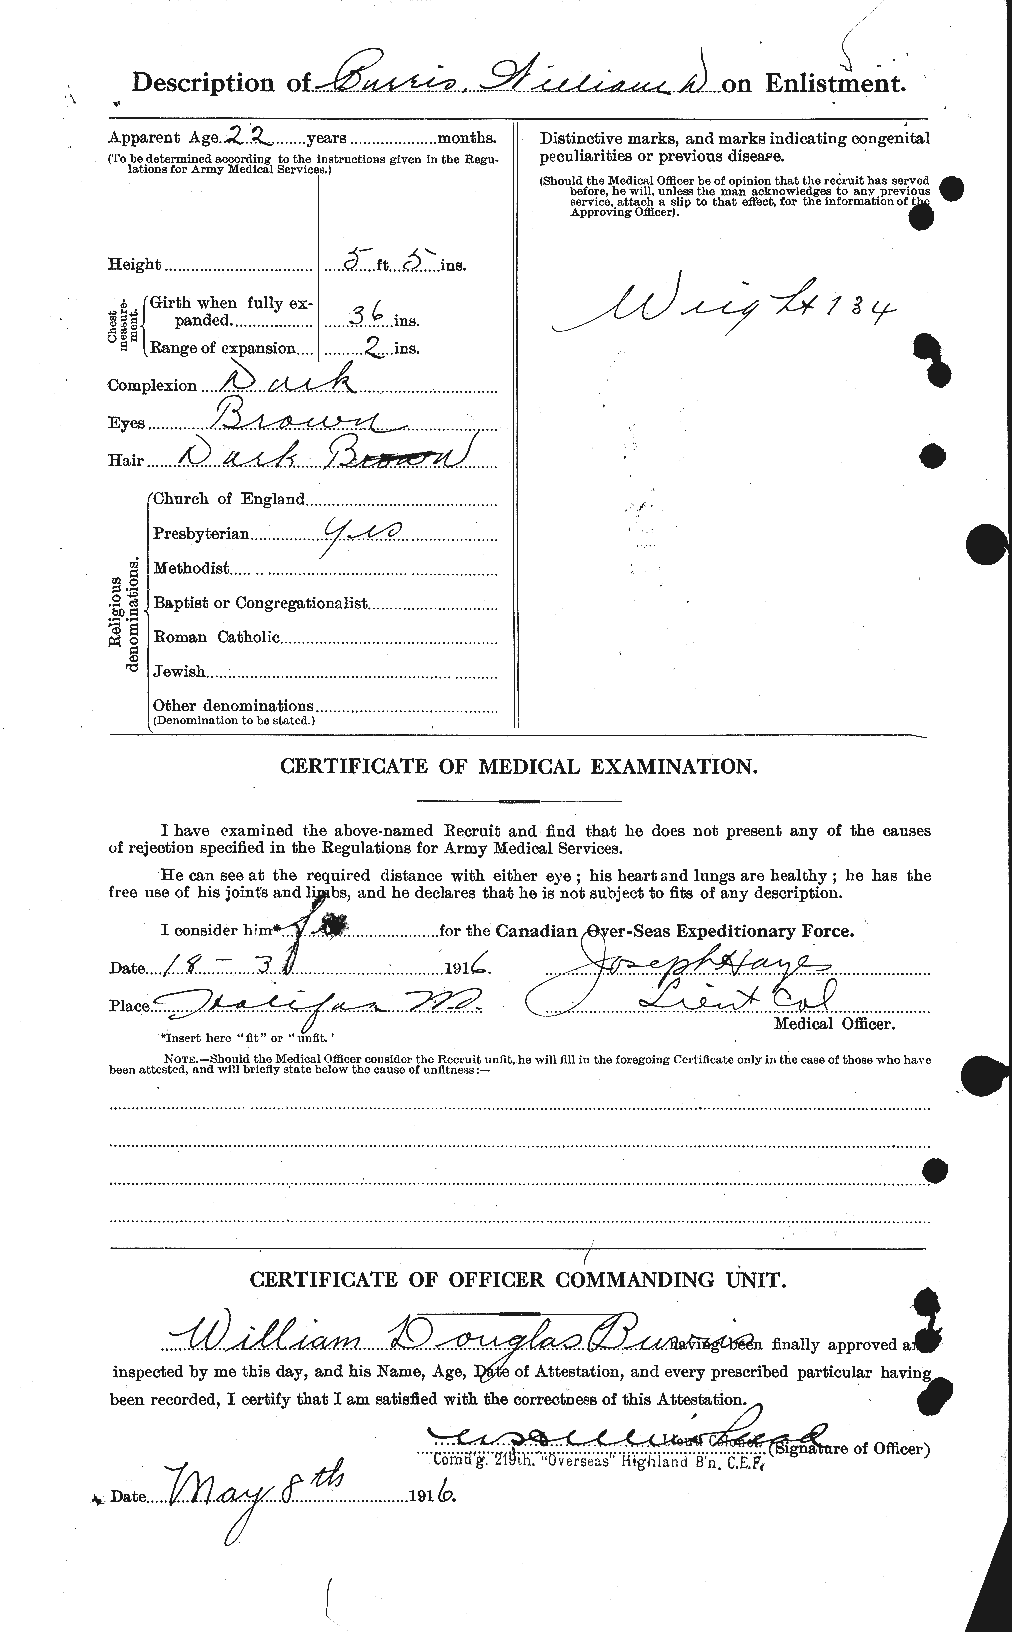 Dossiers du Personnel de la Première Guerre mondiale - CEC 274692b